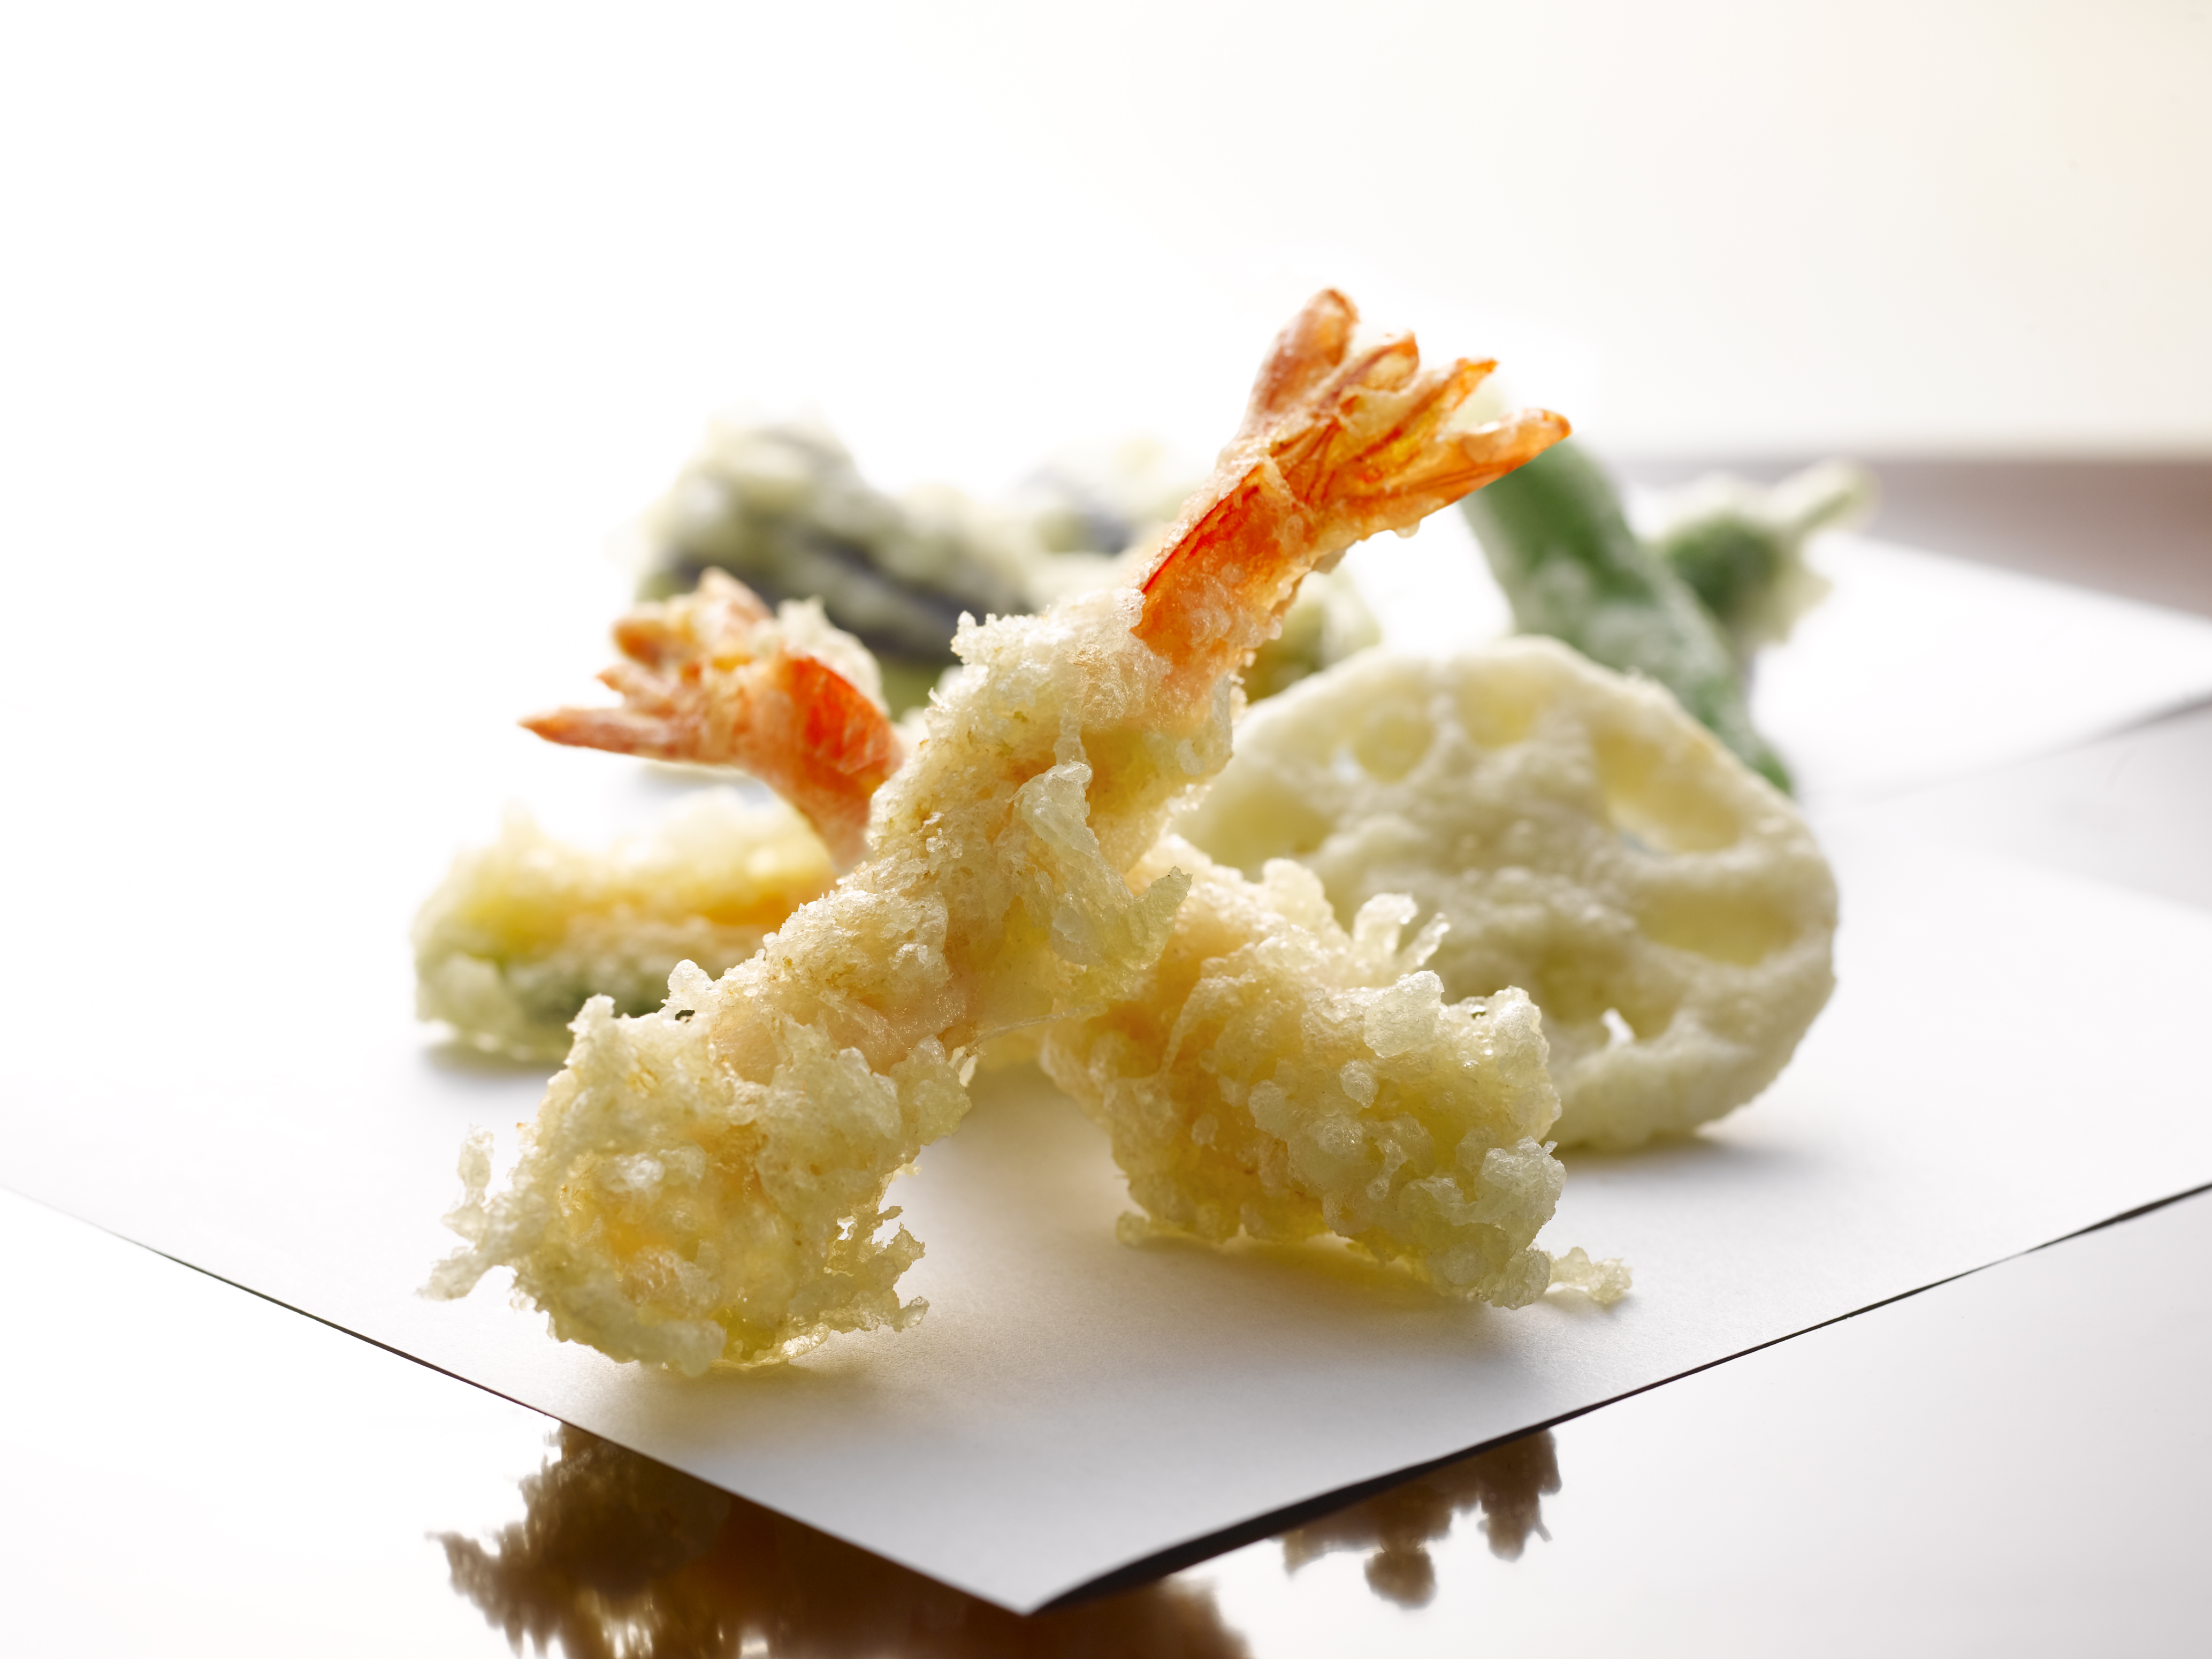 愛知県産小麦きぬあかりを使用した金トビの天ぷら粉